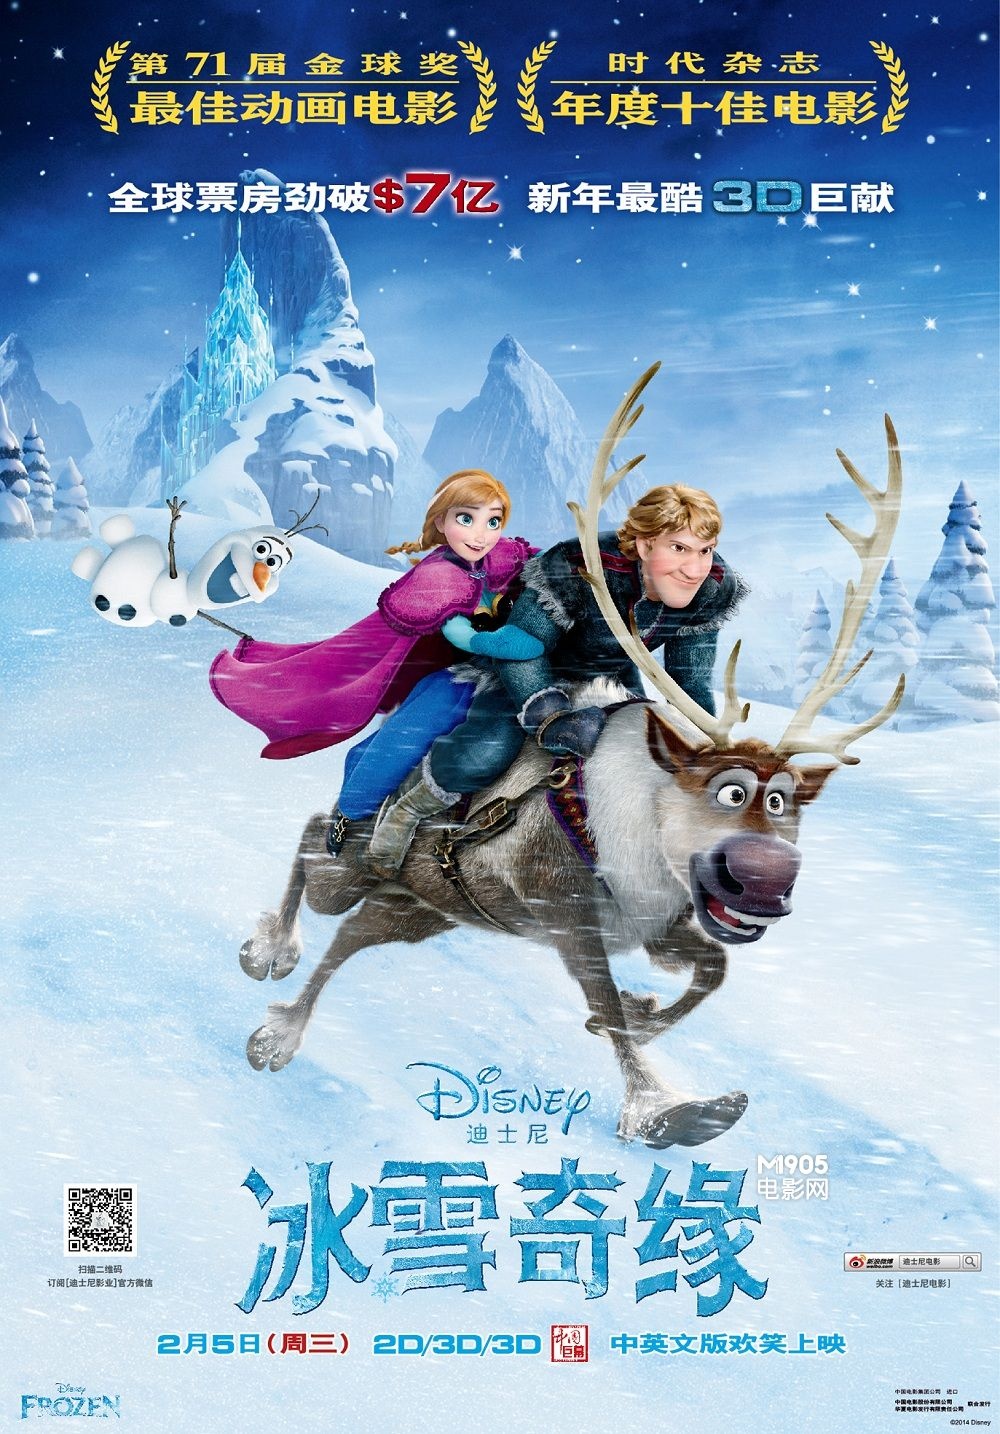 冰雪奇缘2中文版完整版 冰雪奇缘2英文版双字幕